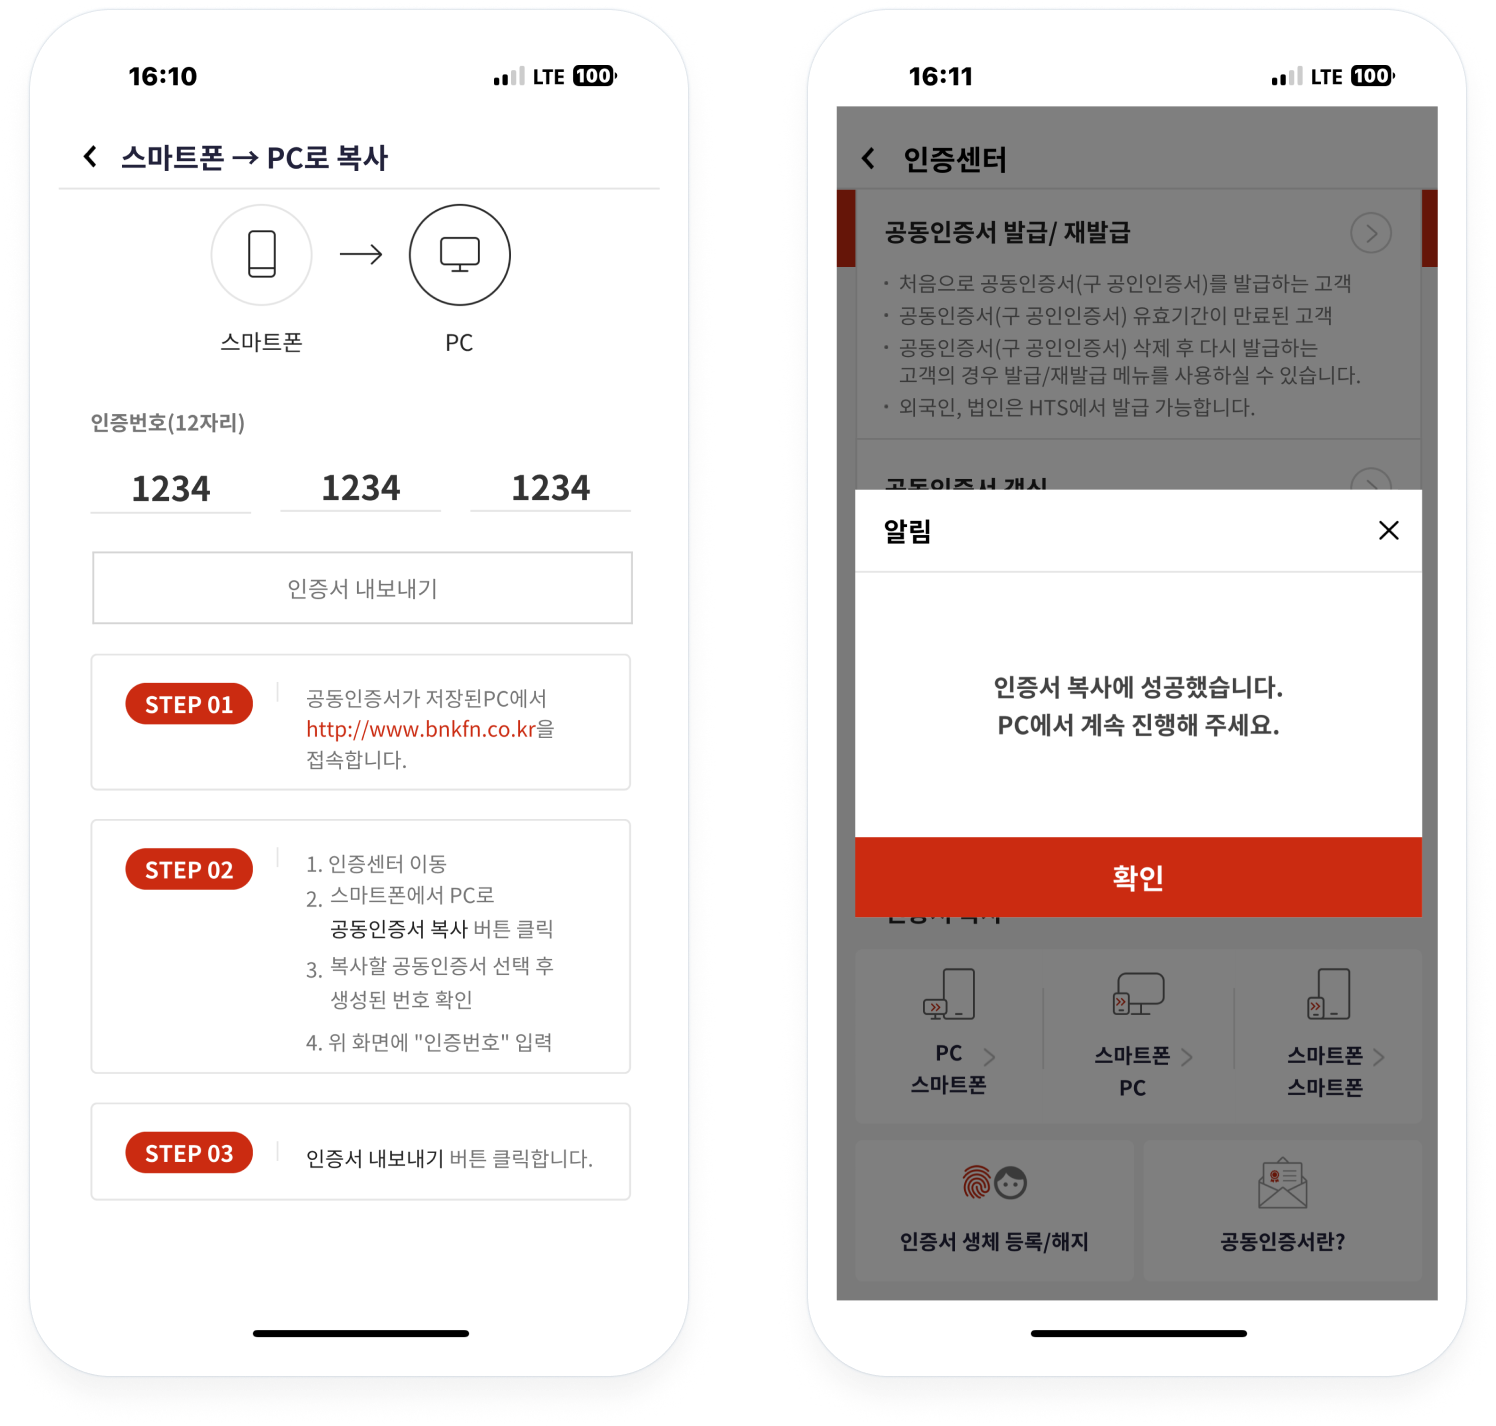 모바일 앱(BNK투자증권) 접속 - 스마트폰에 인증번호 입력